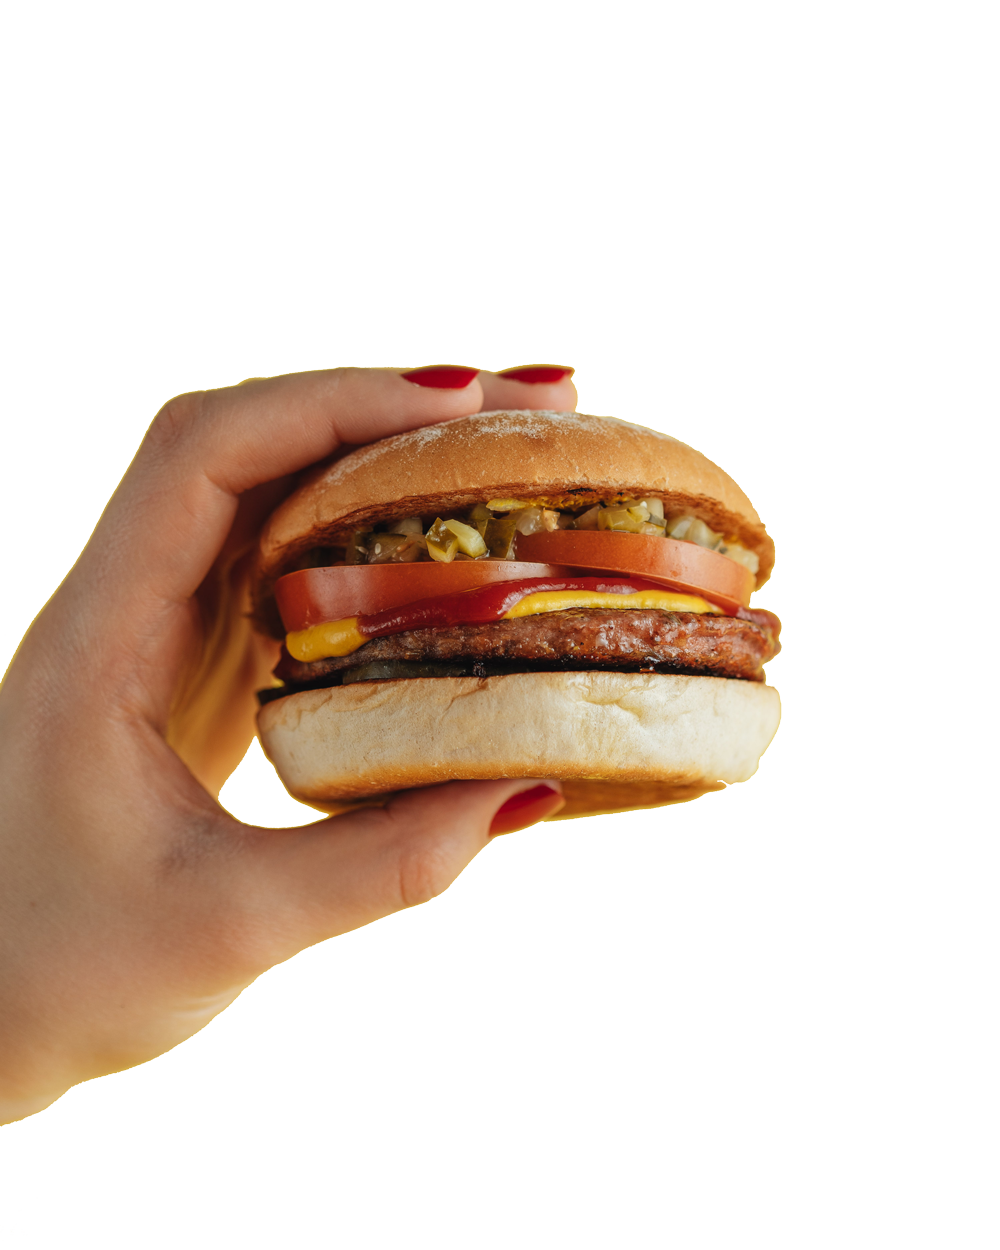 Burger in hand left